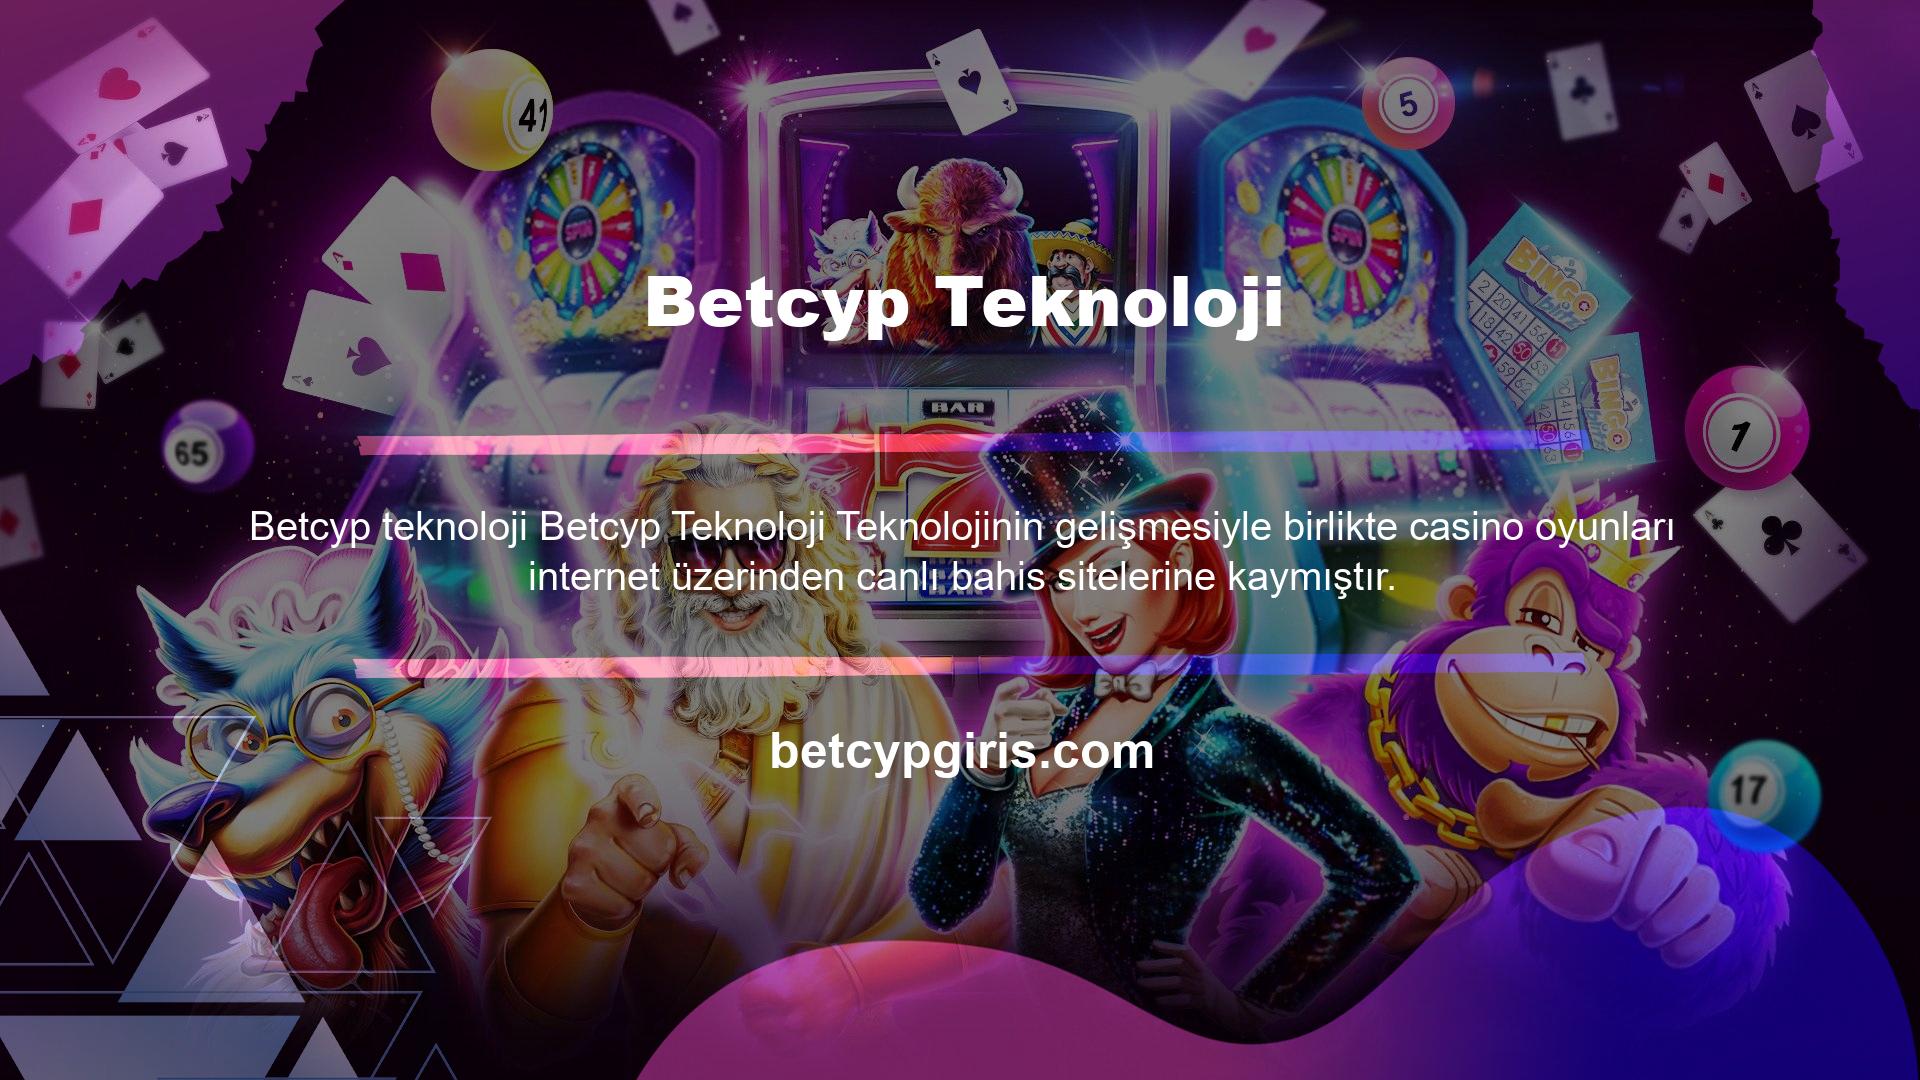 Betcyp canlı bahis sitesi de Türkiye'nin en sevilen bahis sitelerinden biridir